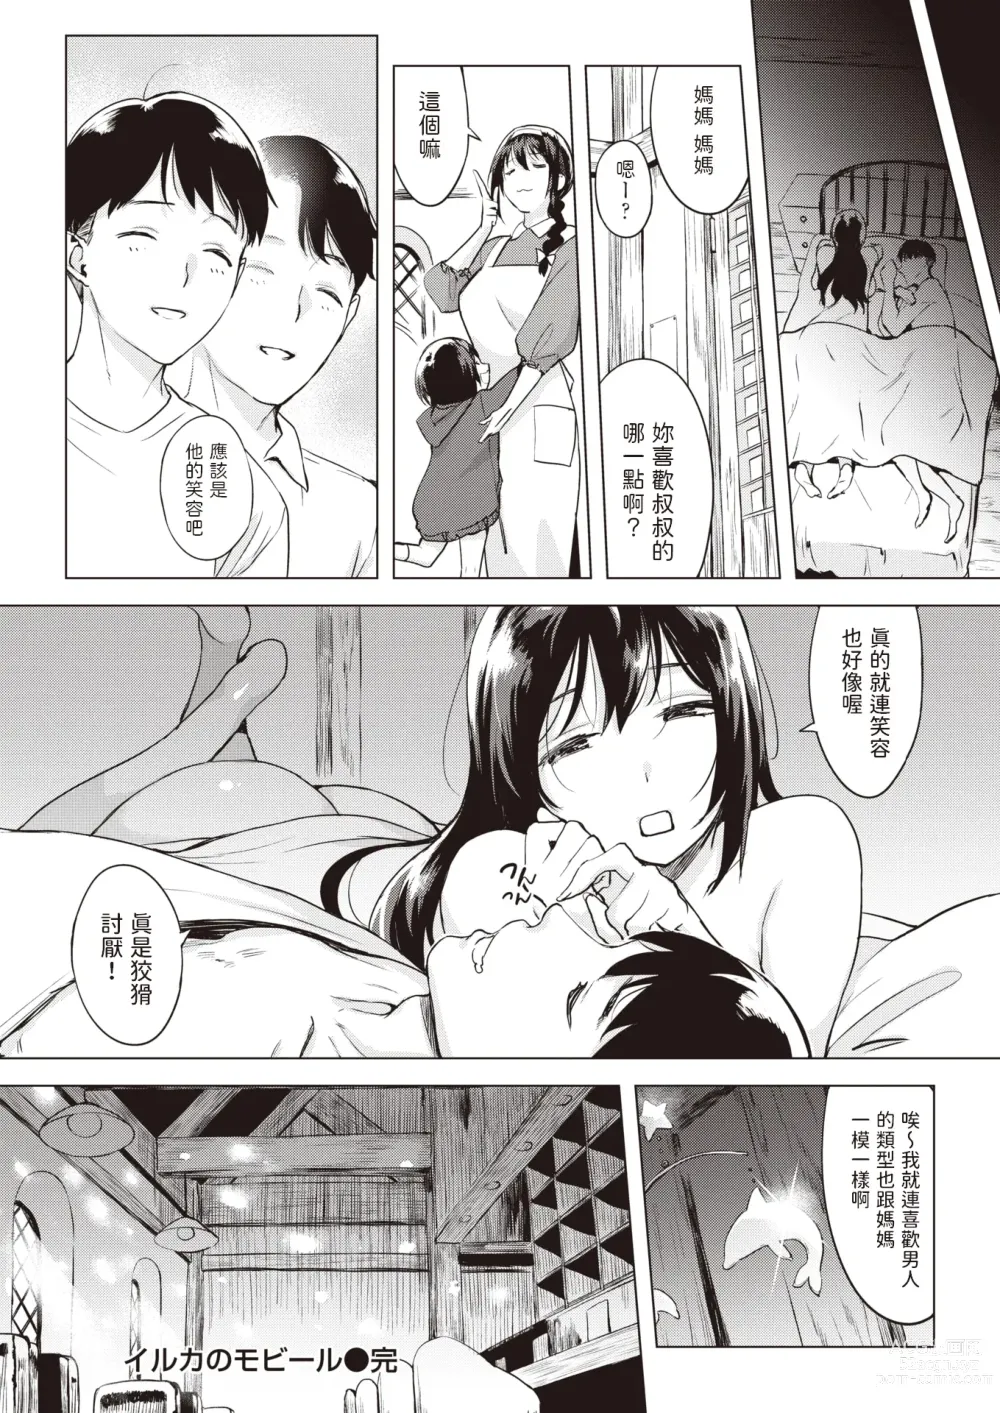 Page 22 of manga Iruka no Mobile